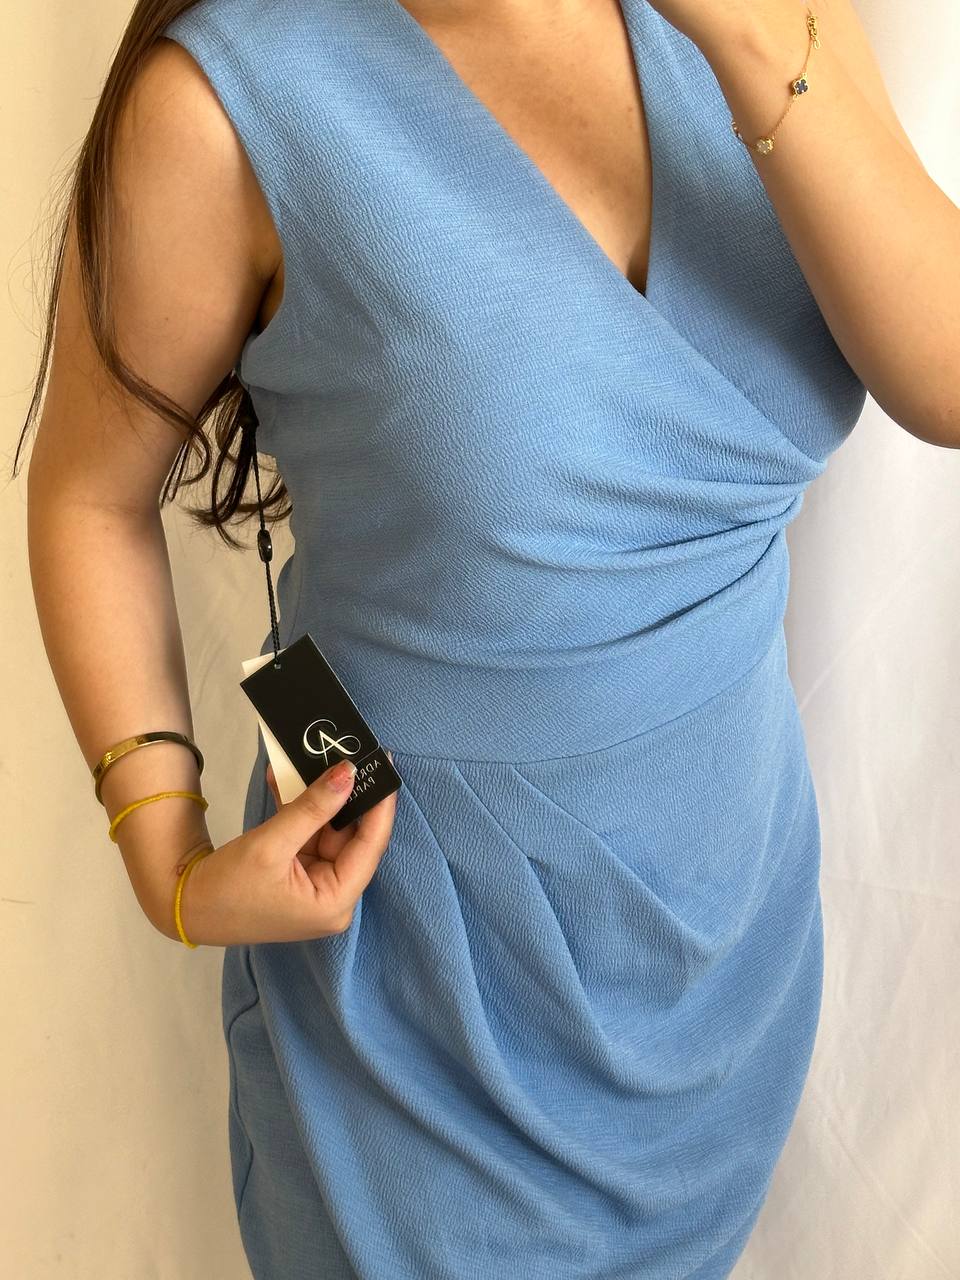 Adriana papel dress